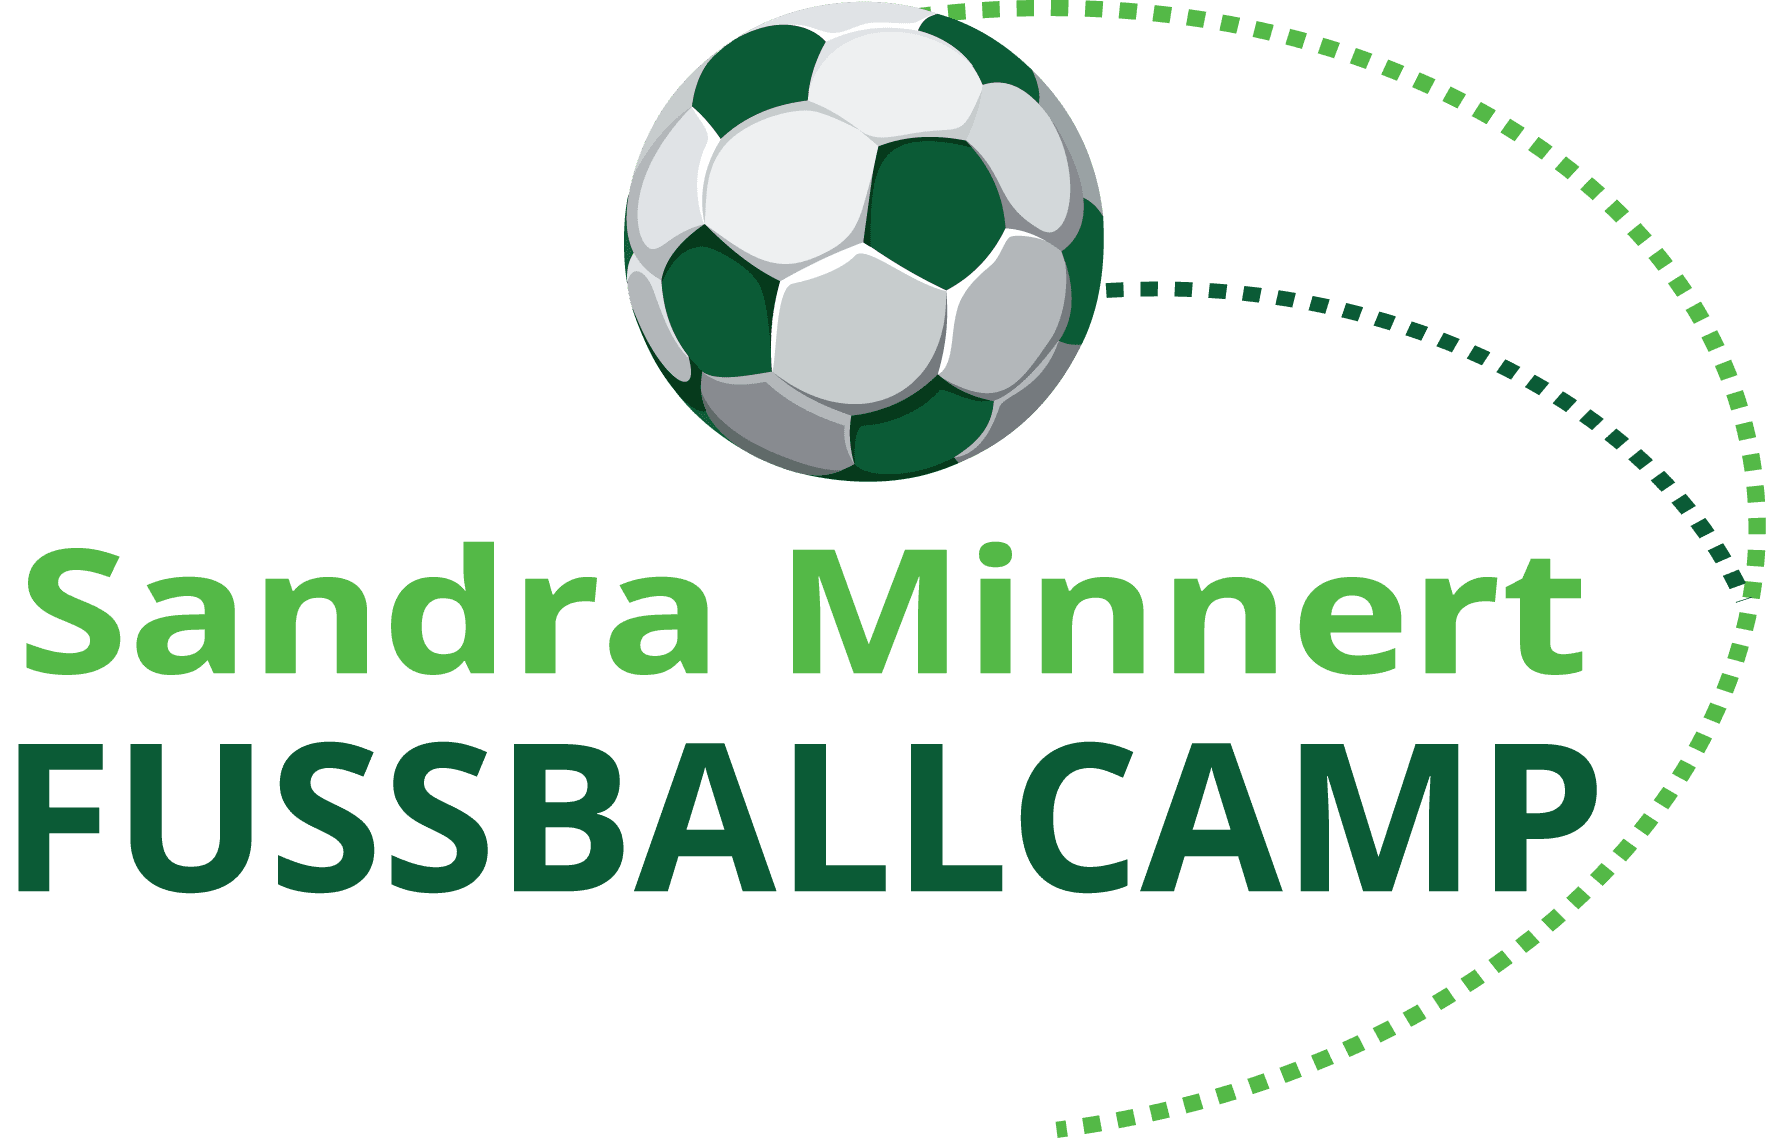 Sandra Minnert Fussballcamp Eventmodule Verleih Fussballschule Fussballmodule mieten